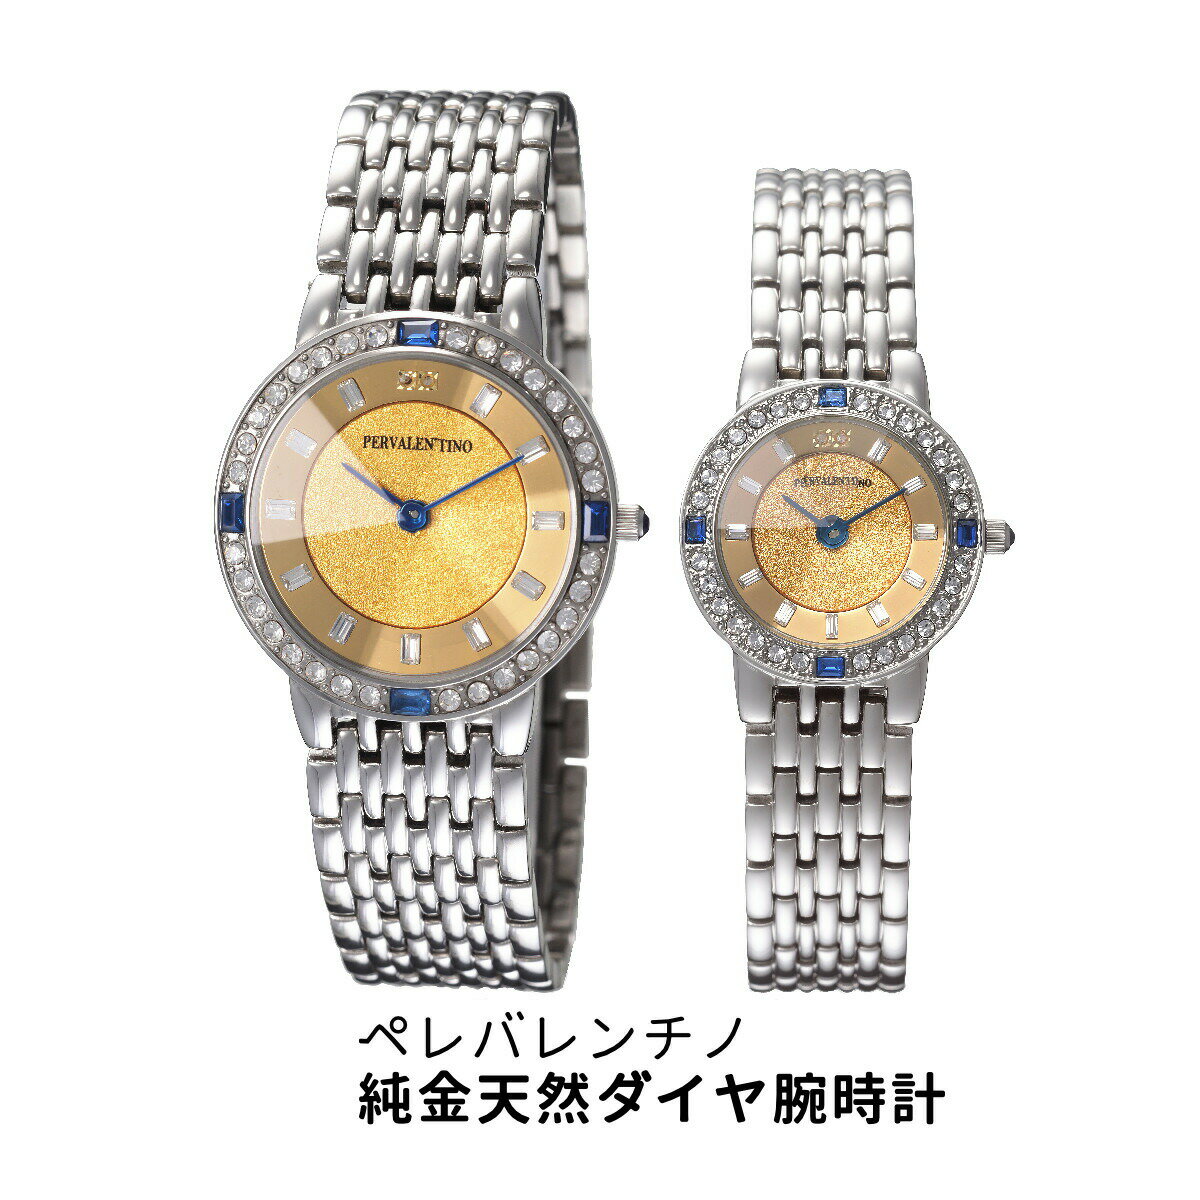 ペレバレンチノ純金天然ダイヤ腕時計【ヘルシ価格】...の商品画像